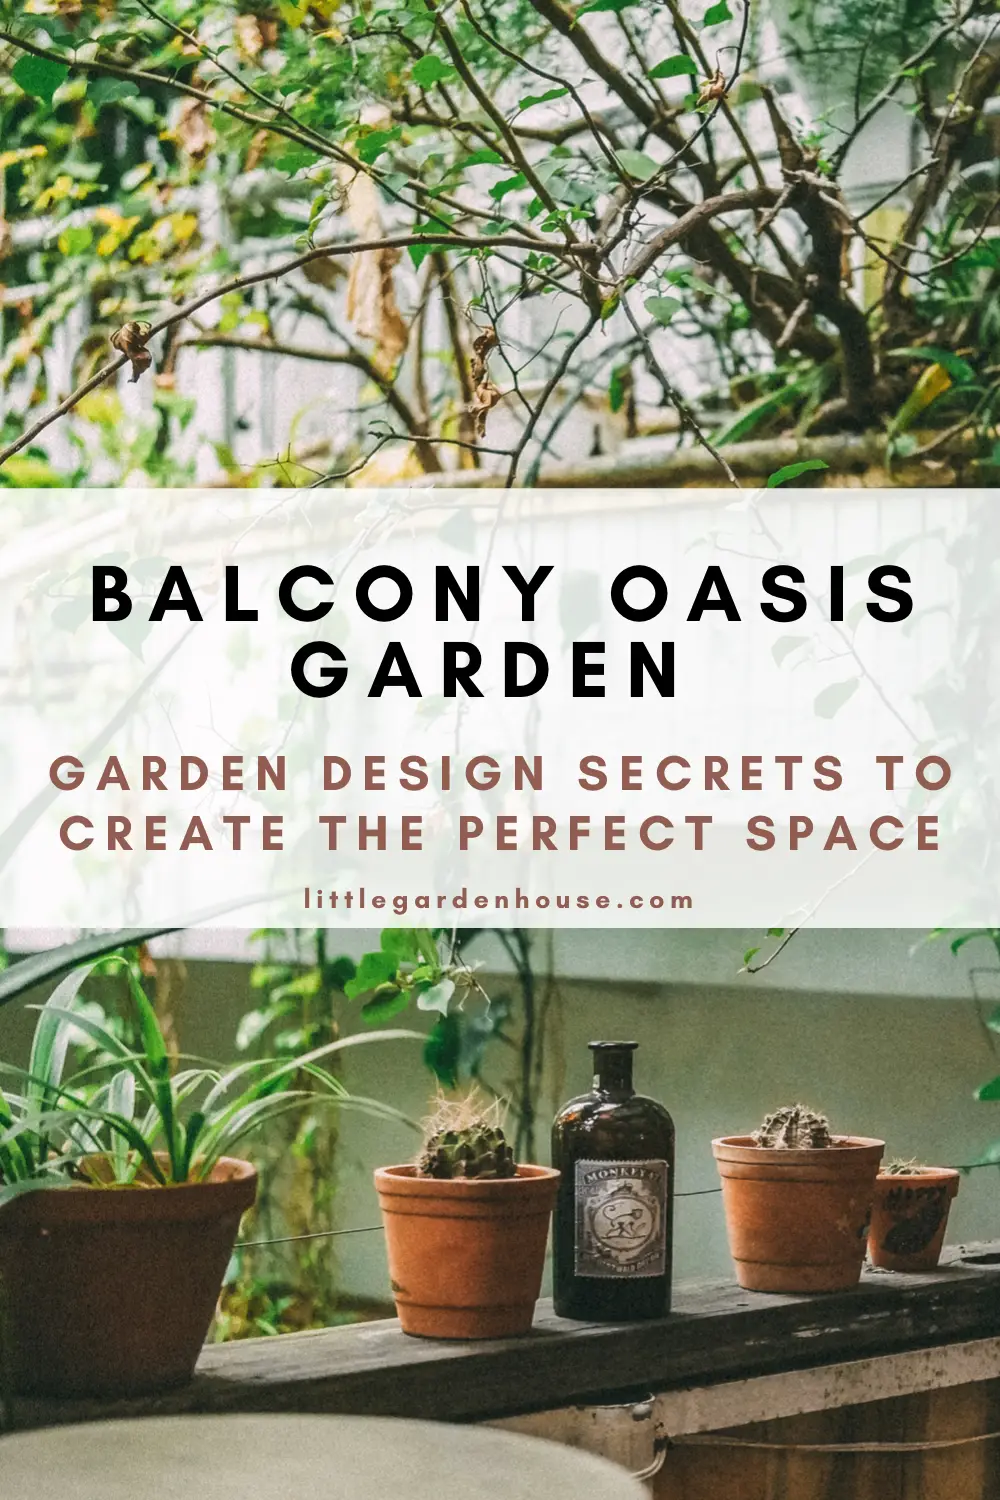 How to Create a Balcony Oasis Garden